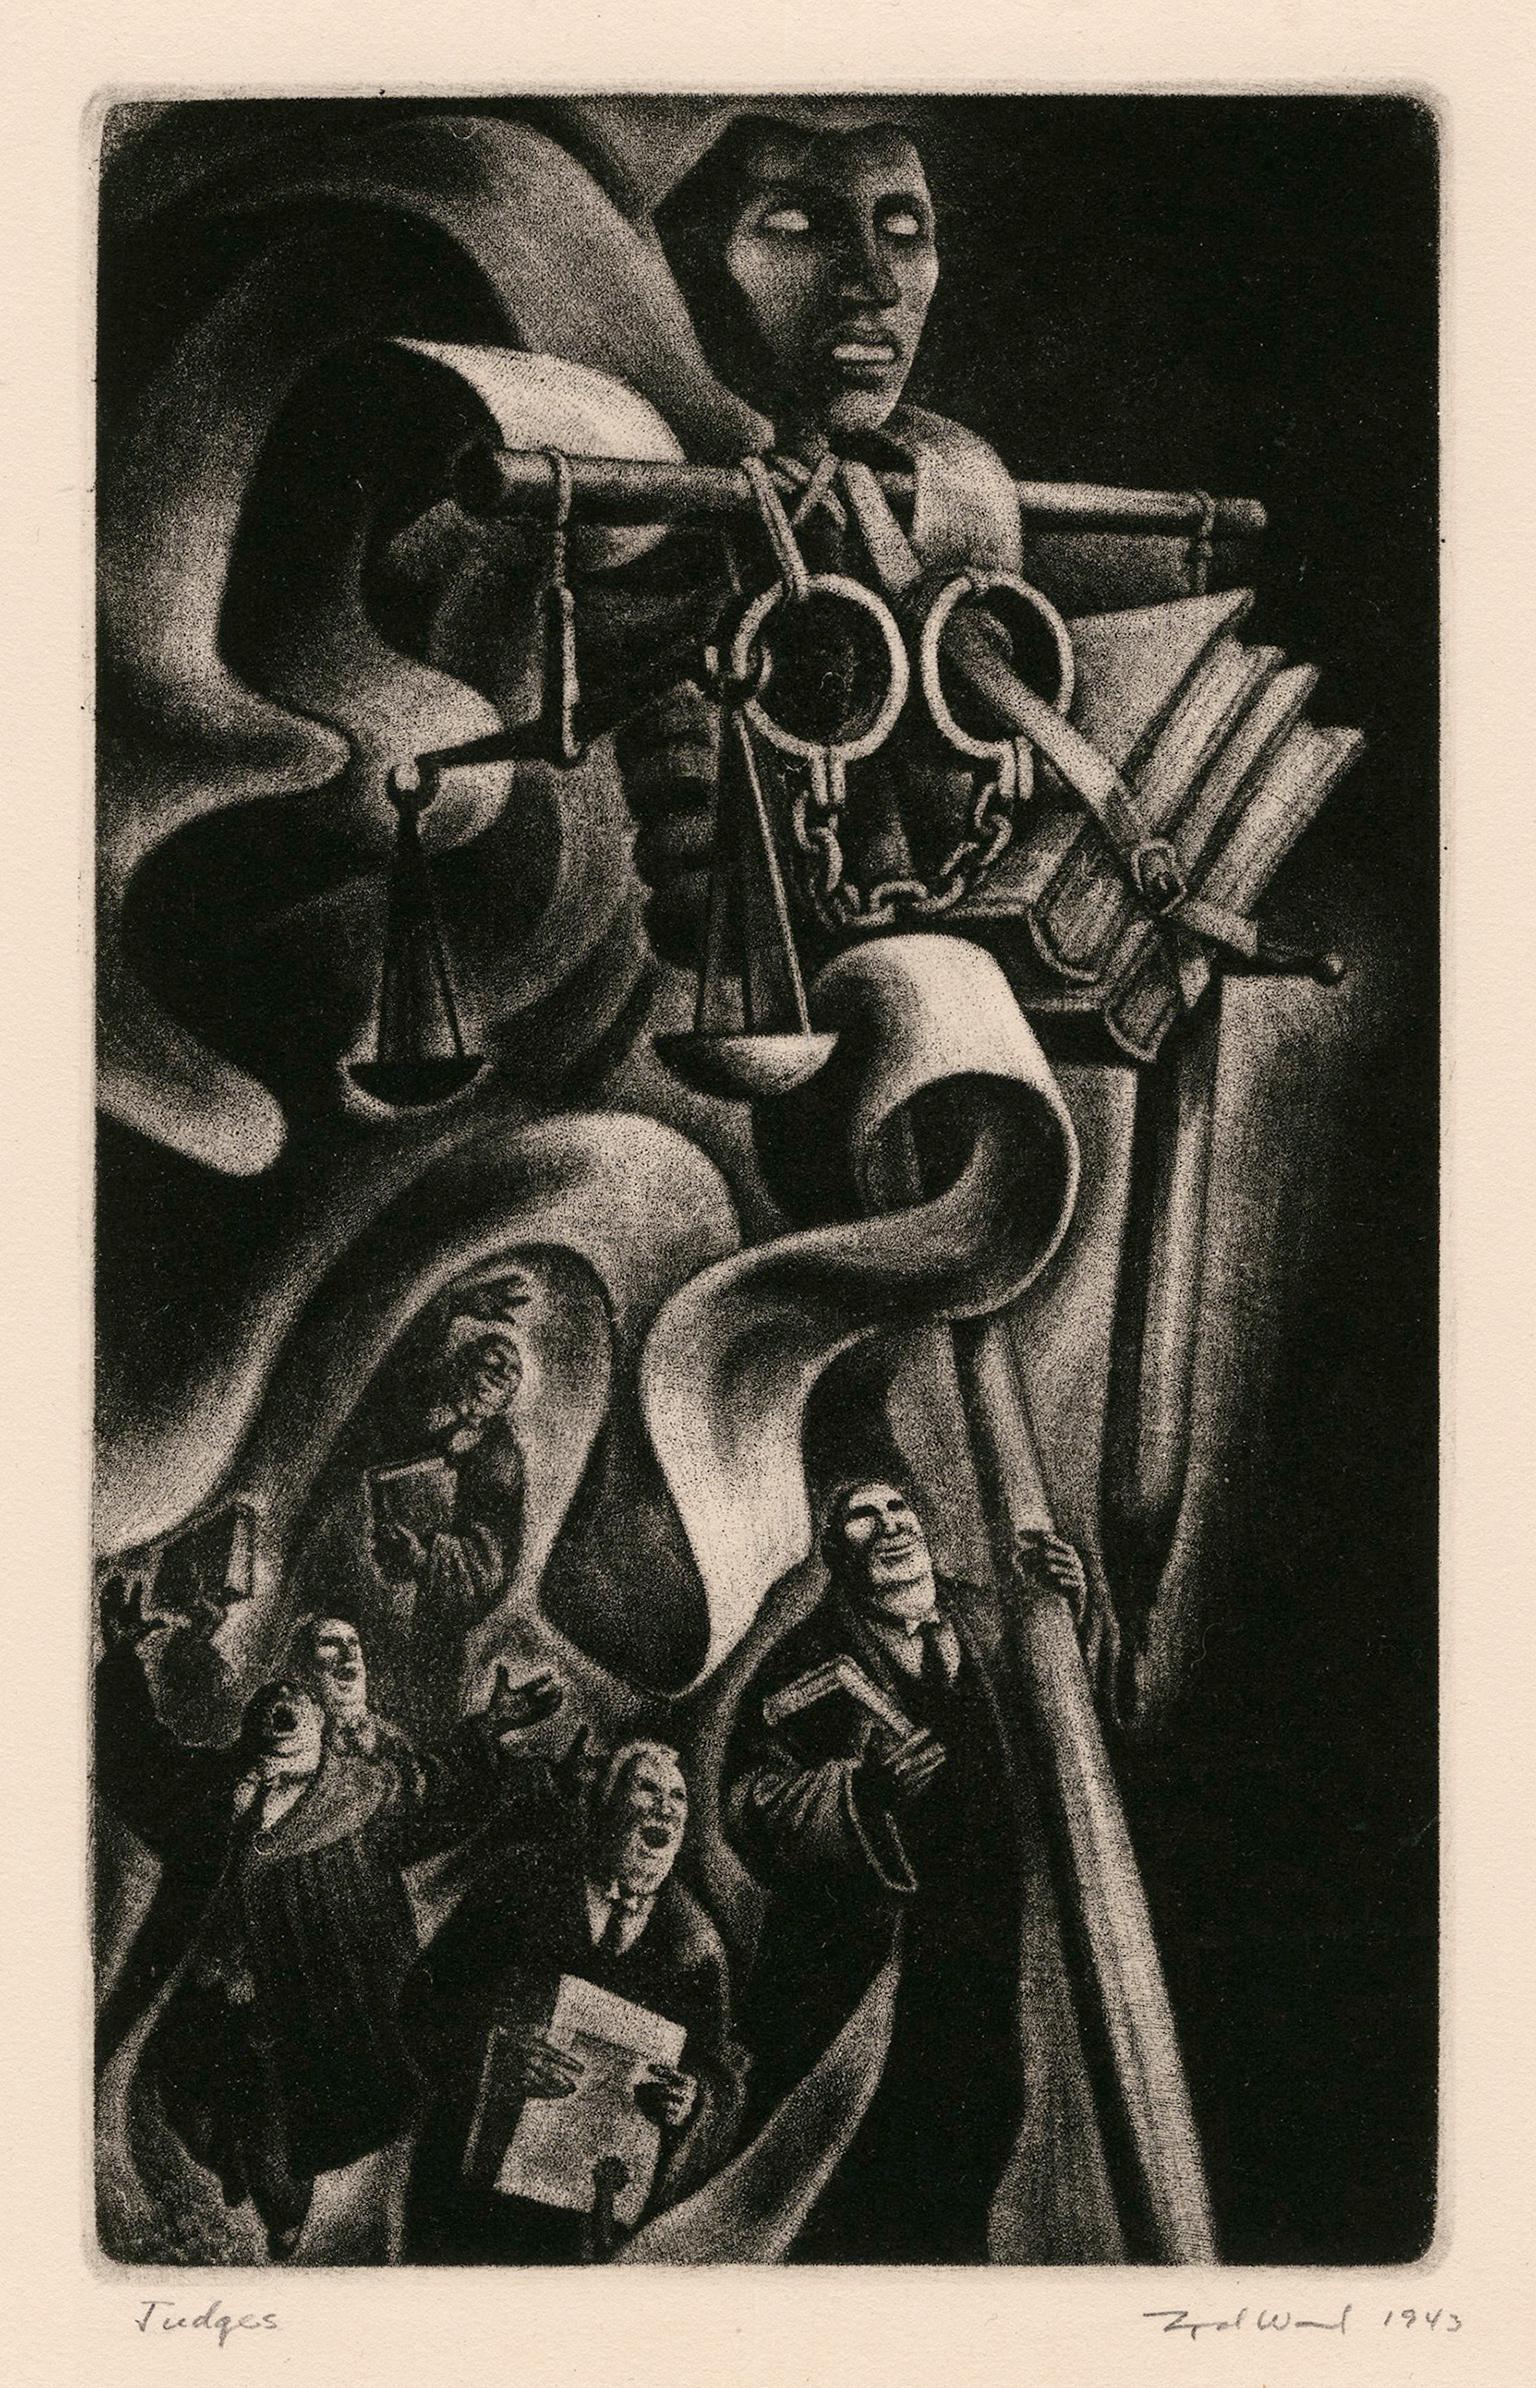 Figurative Print Lynd Ward - Juges" de "L'éloge de la folie" - Modernisme graphique des années 1940